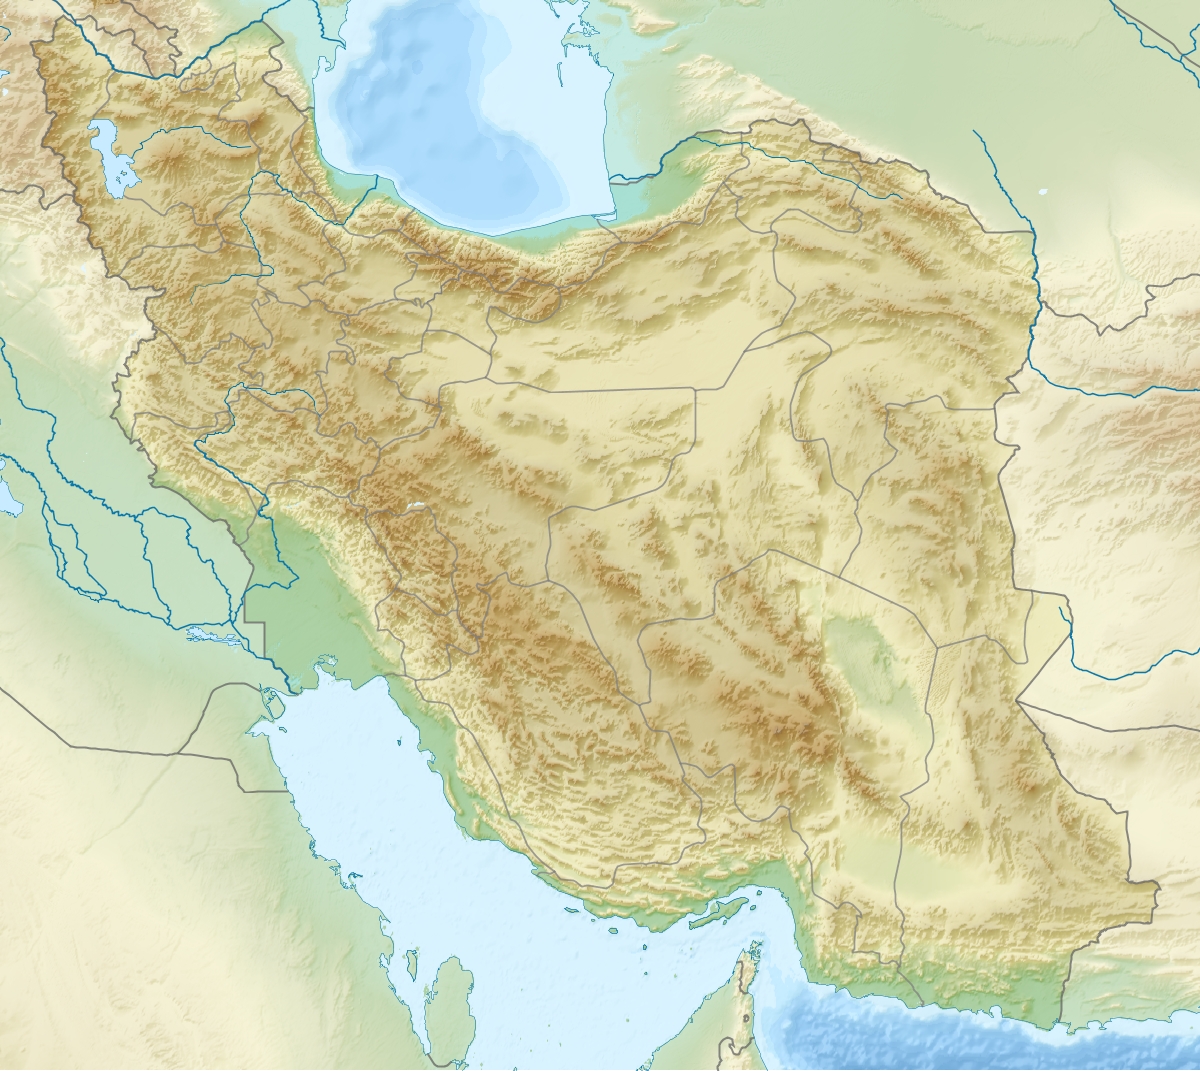 توپوگرافی نقشه ایران ، جهان ، دنیا ، شهرها و راههای ایران با کیفیت بسیار بالا و عکس ناسا